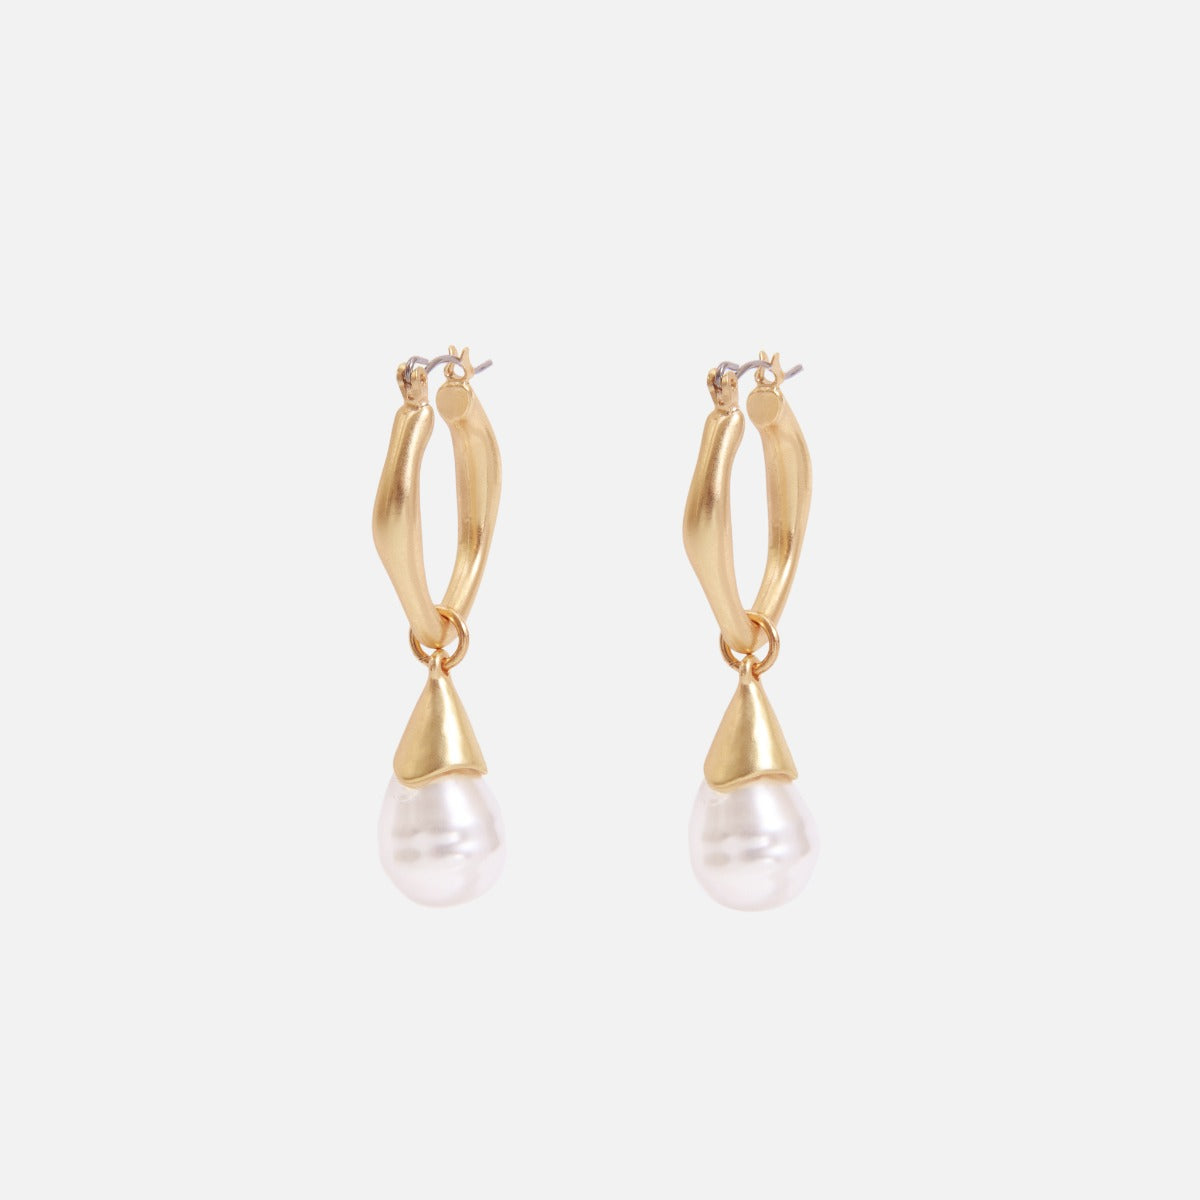 Boucles d’oreilles anneaux dorés avec perle en forme de goutte